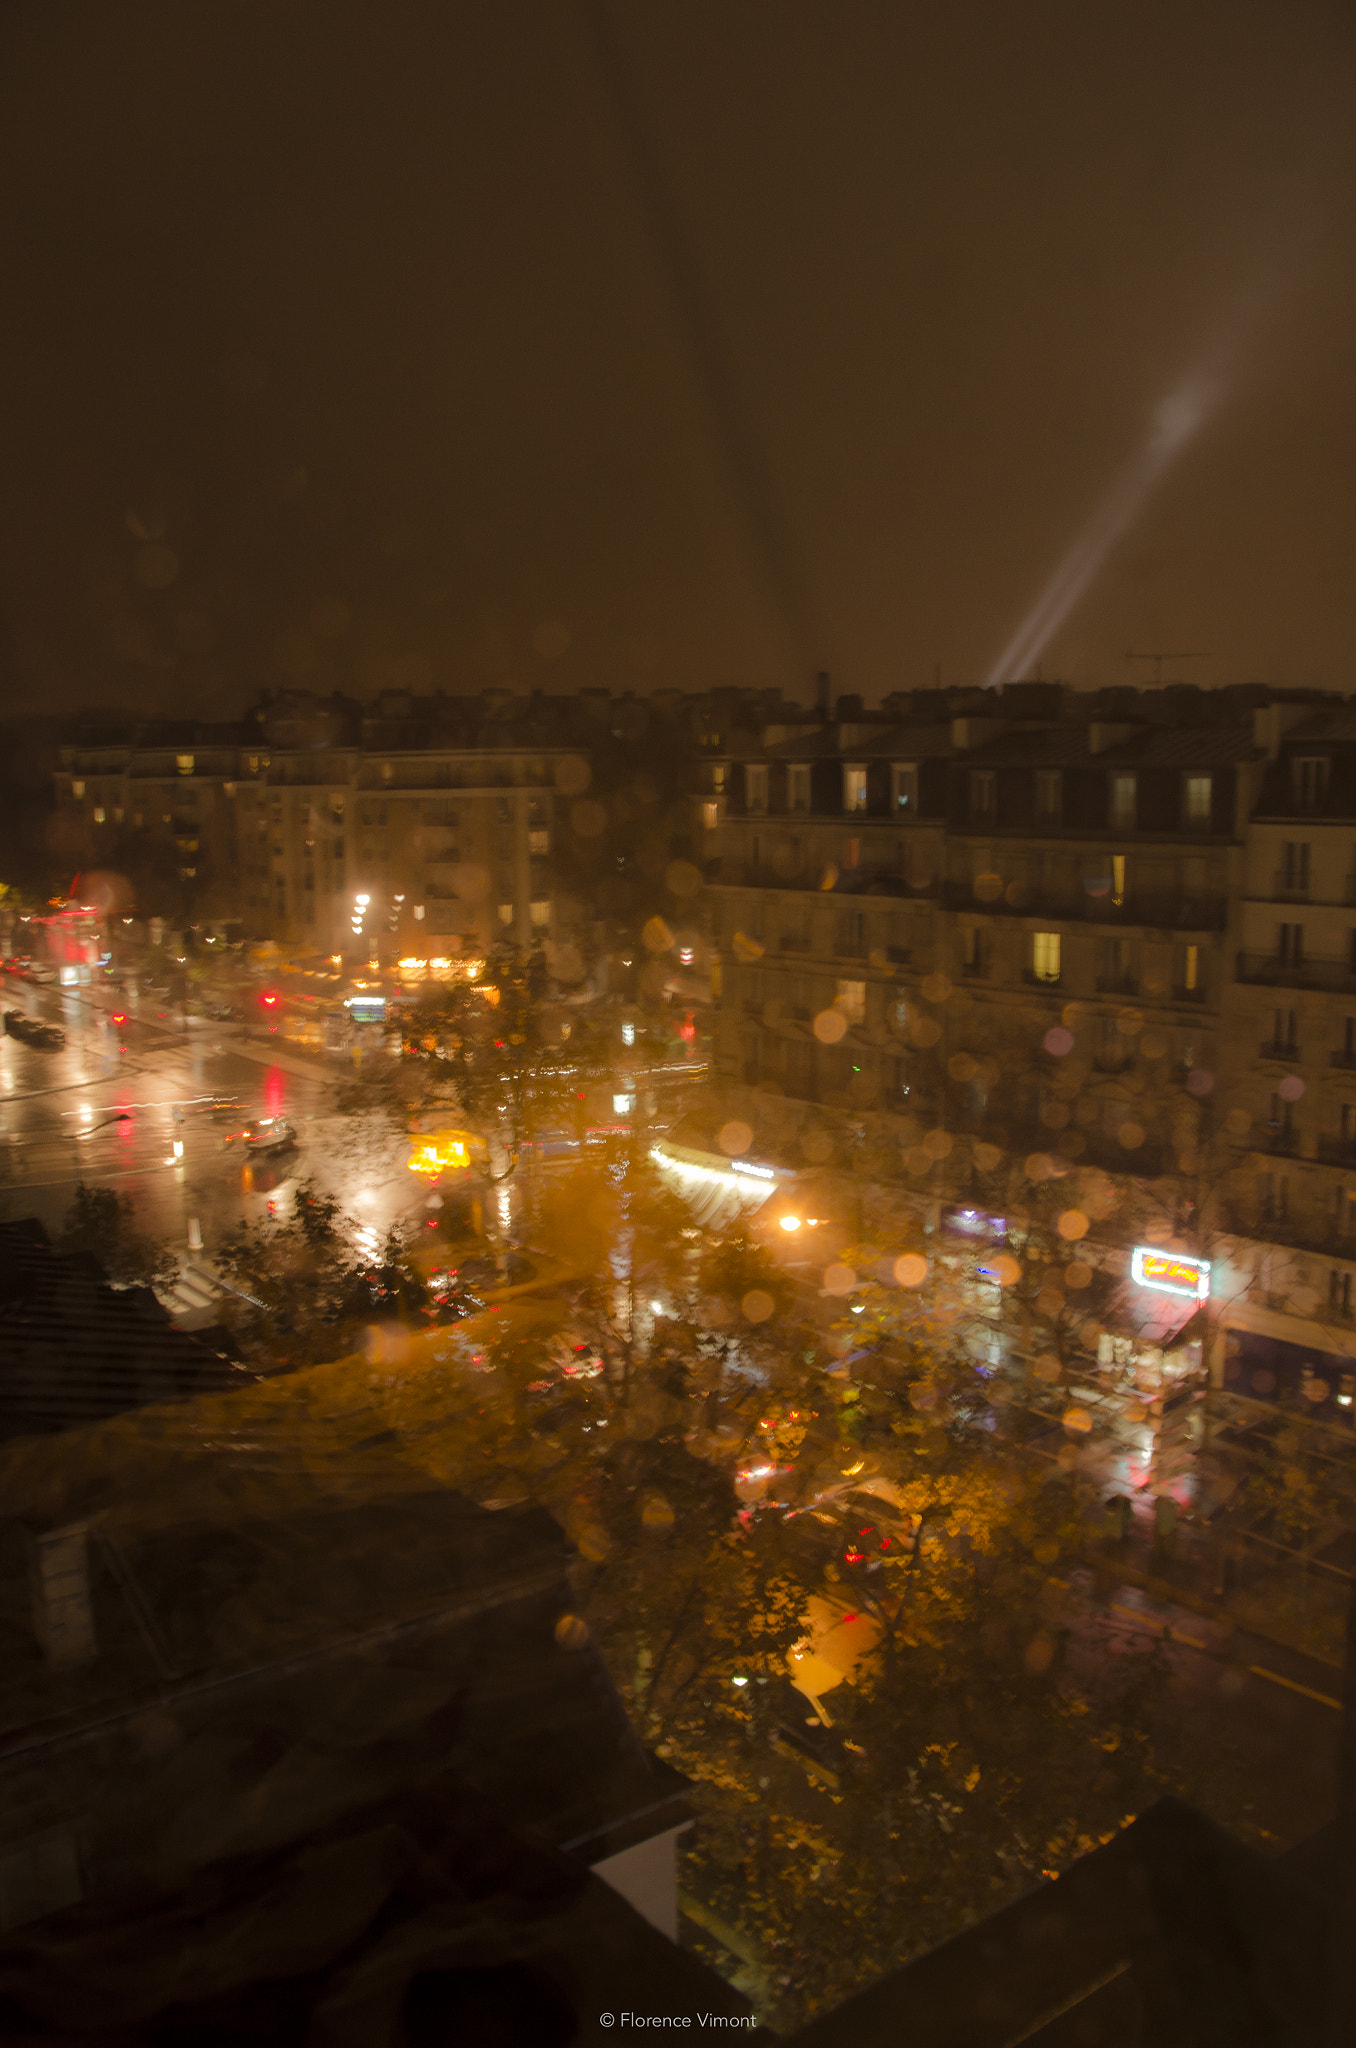 Nikon D7000 sample photo. Paris light night photography